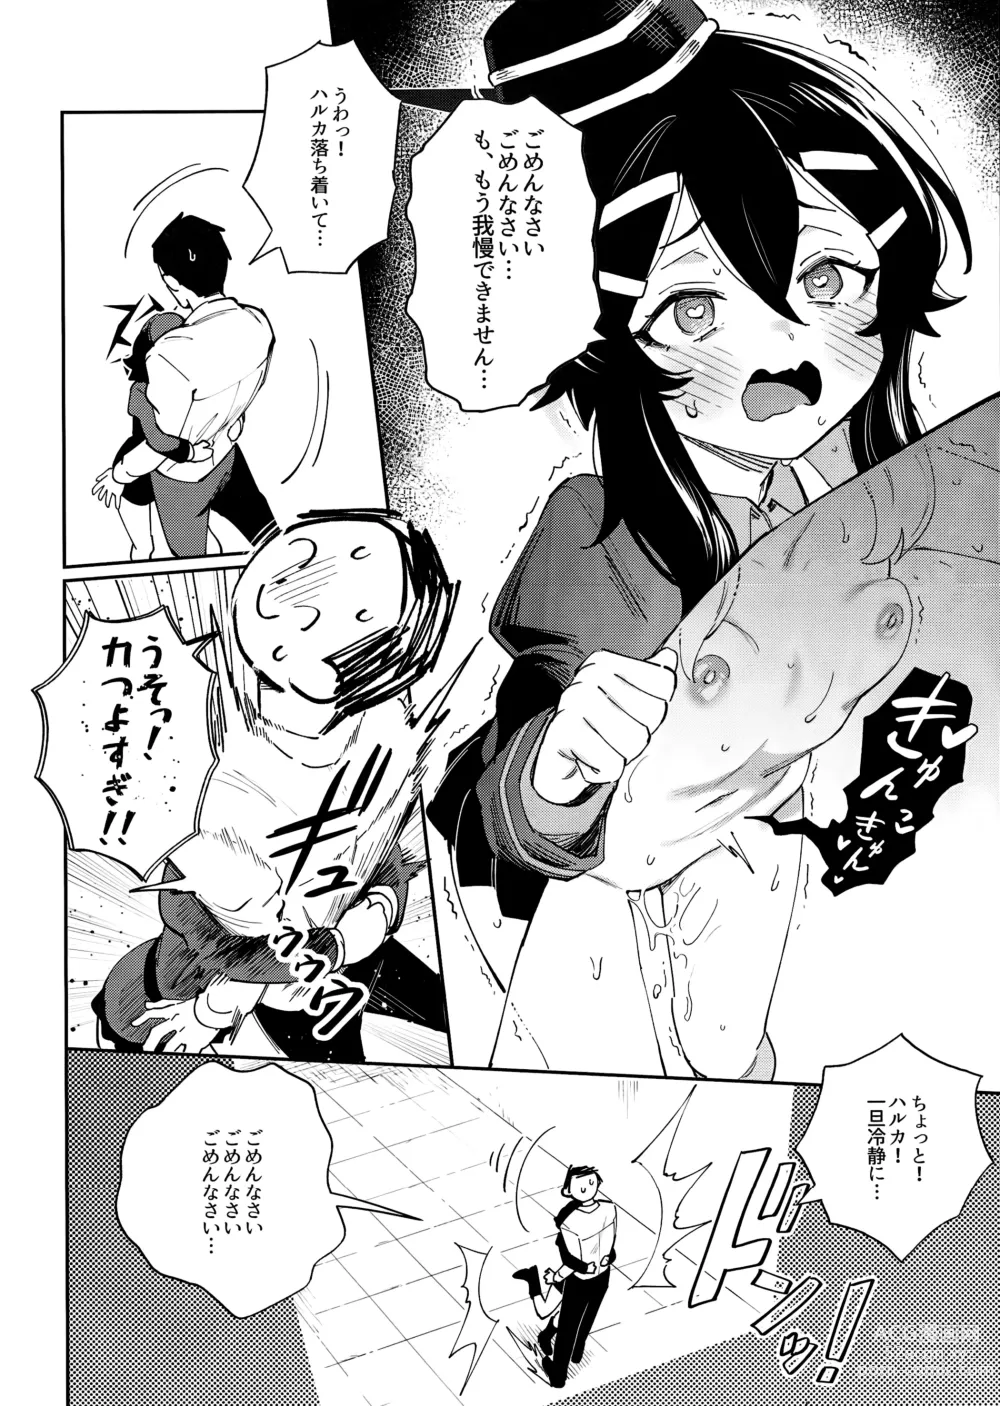 Page 8 of doujinshi Sensei to Seito no Kankei tte Konna ni mo Open nanoo!?